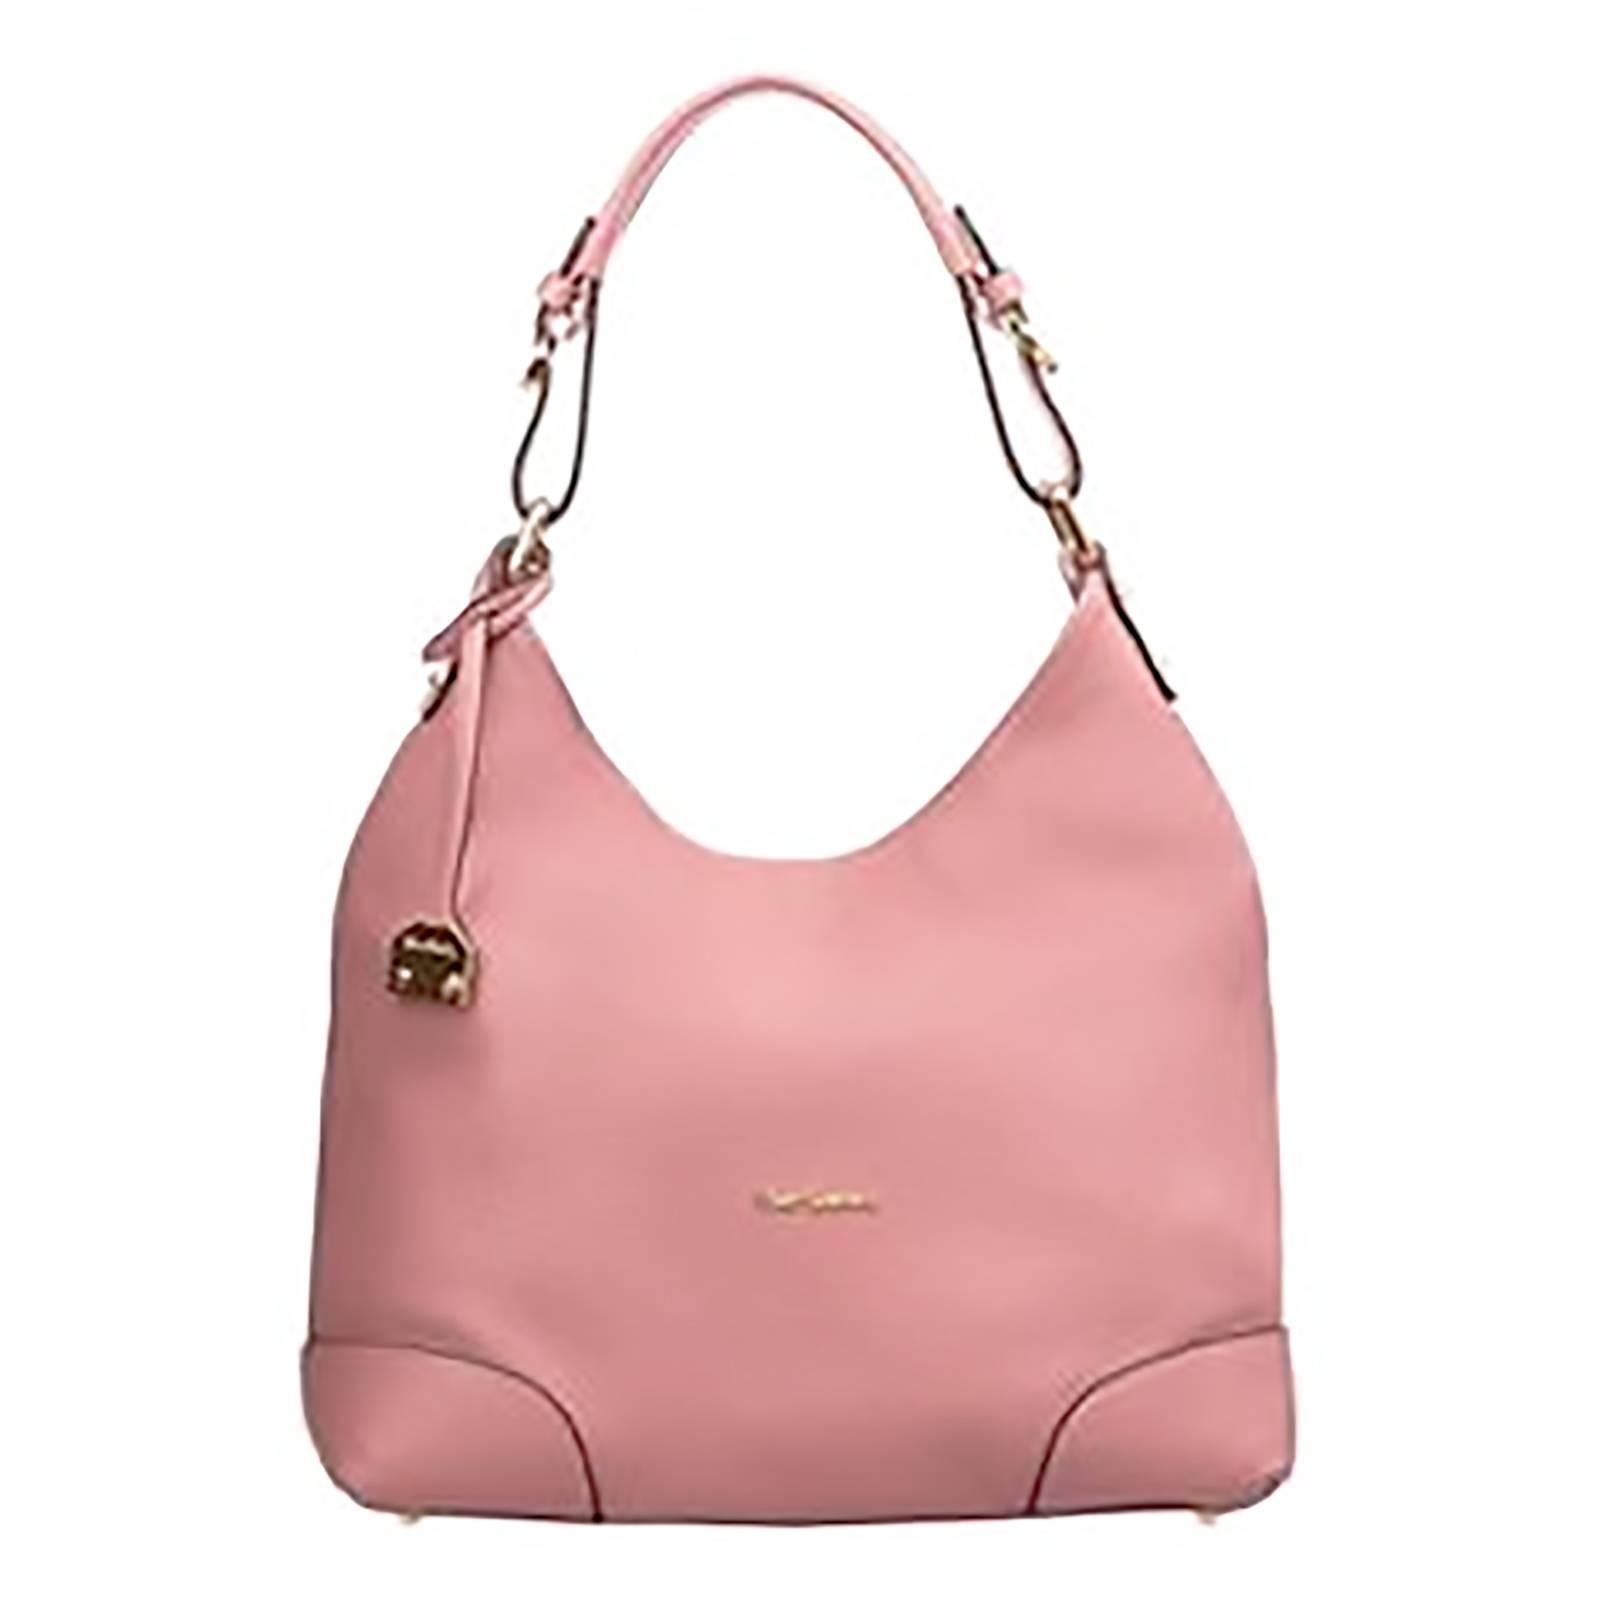 Pierre Cardin New rose pink leather hobo bag handbag